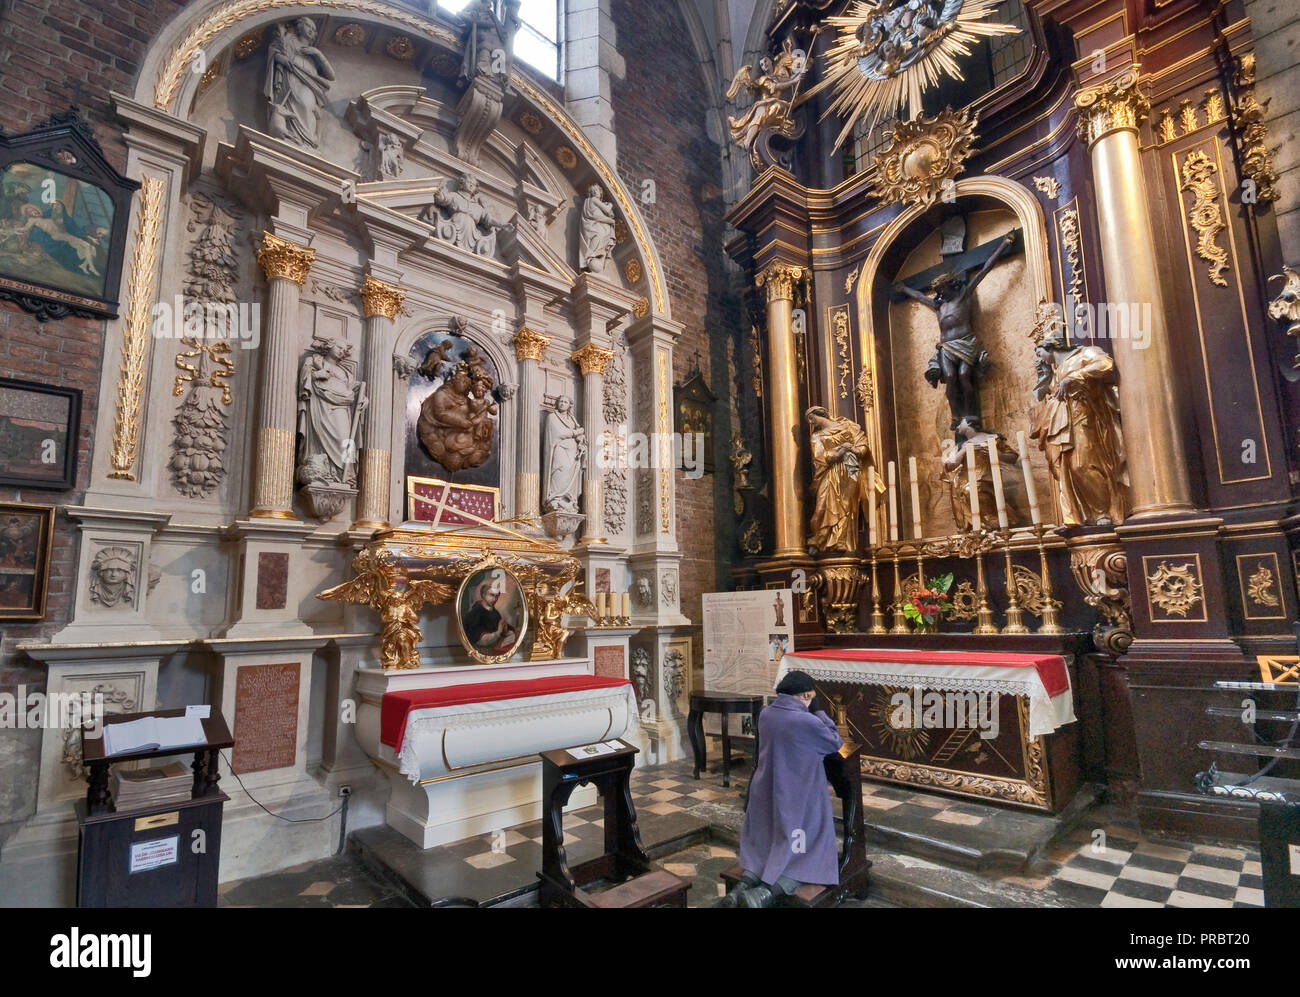 Heiligen Stanislaw renaissance Altar und Mausoleum auf der linken, barocken Altar auf der rechten Seite, Corpus Christi Basilika im Stadtteil Kazimierz in Krakau, Polen Stockfoto